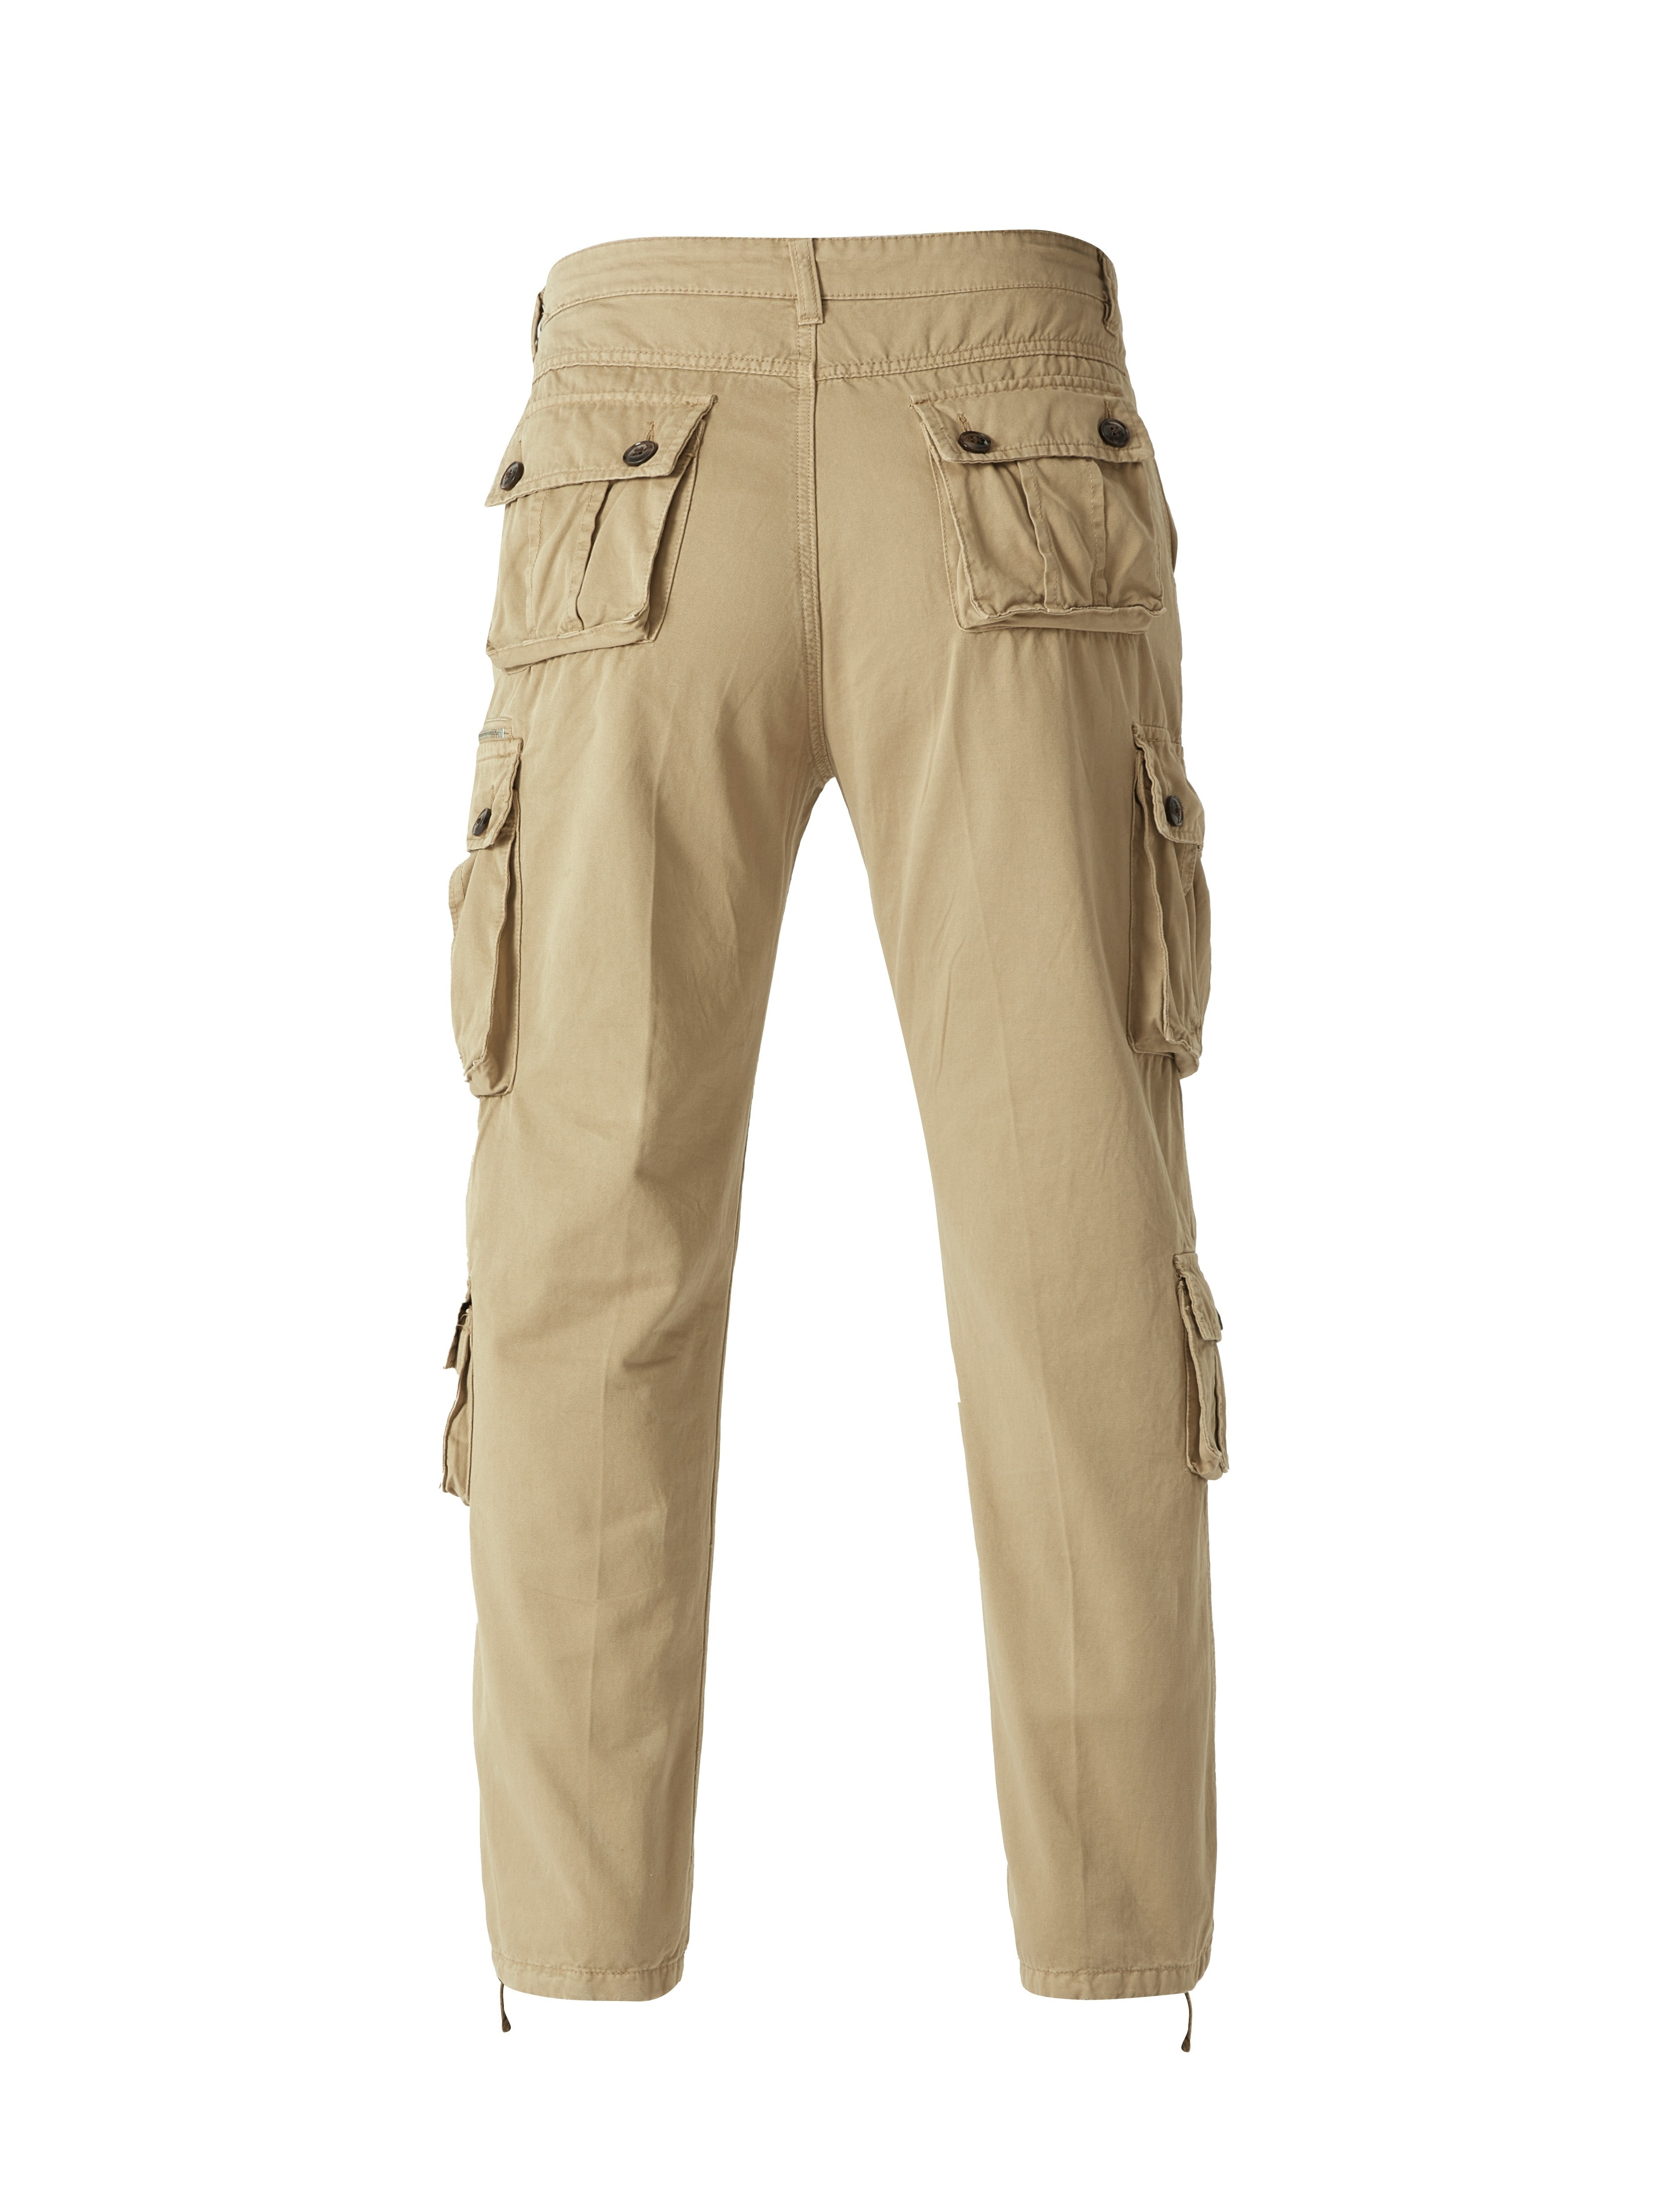 Plus Size Pantalon Cargo Homme Solide Mode Décontractée Pantalon D